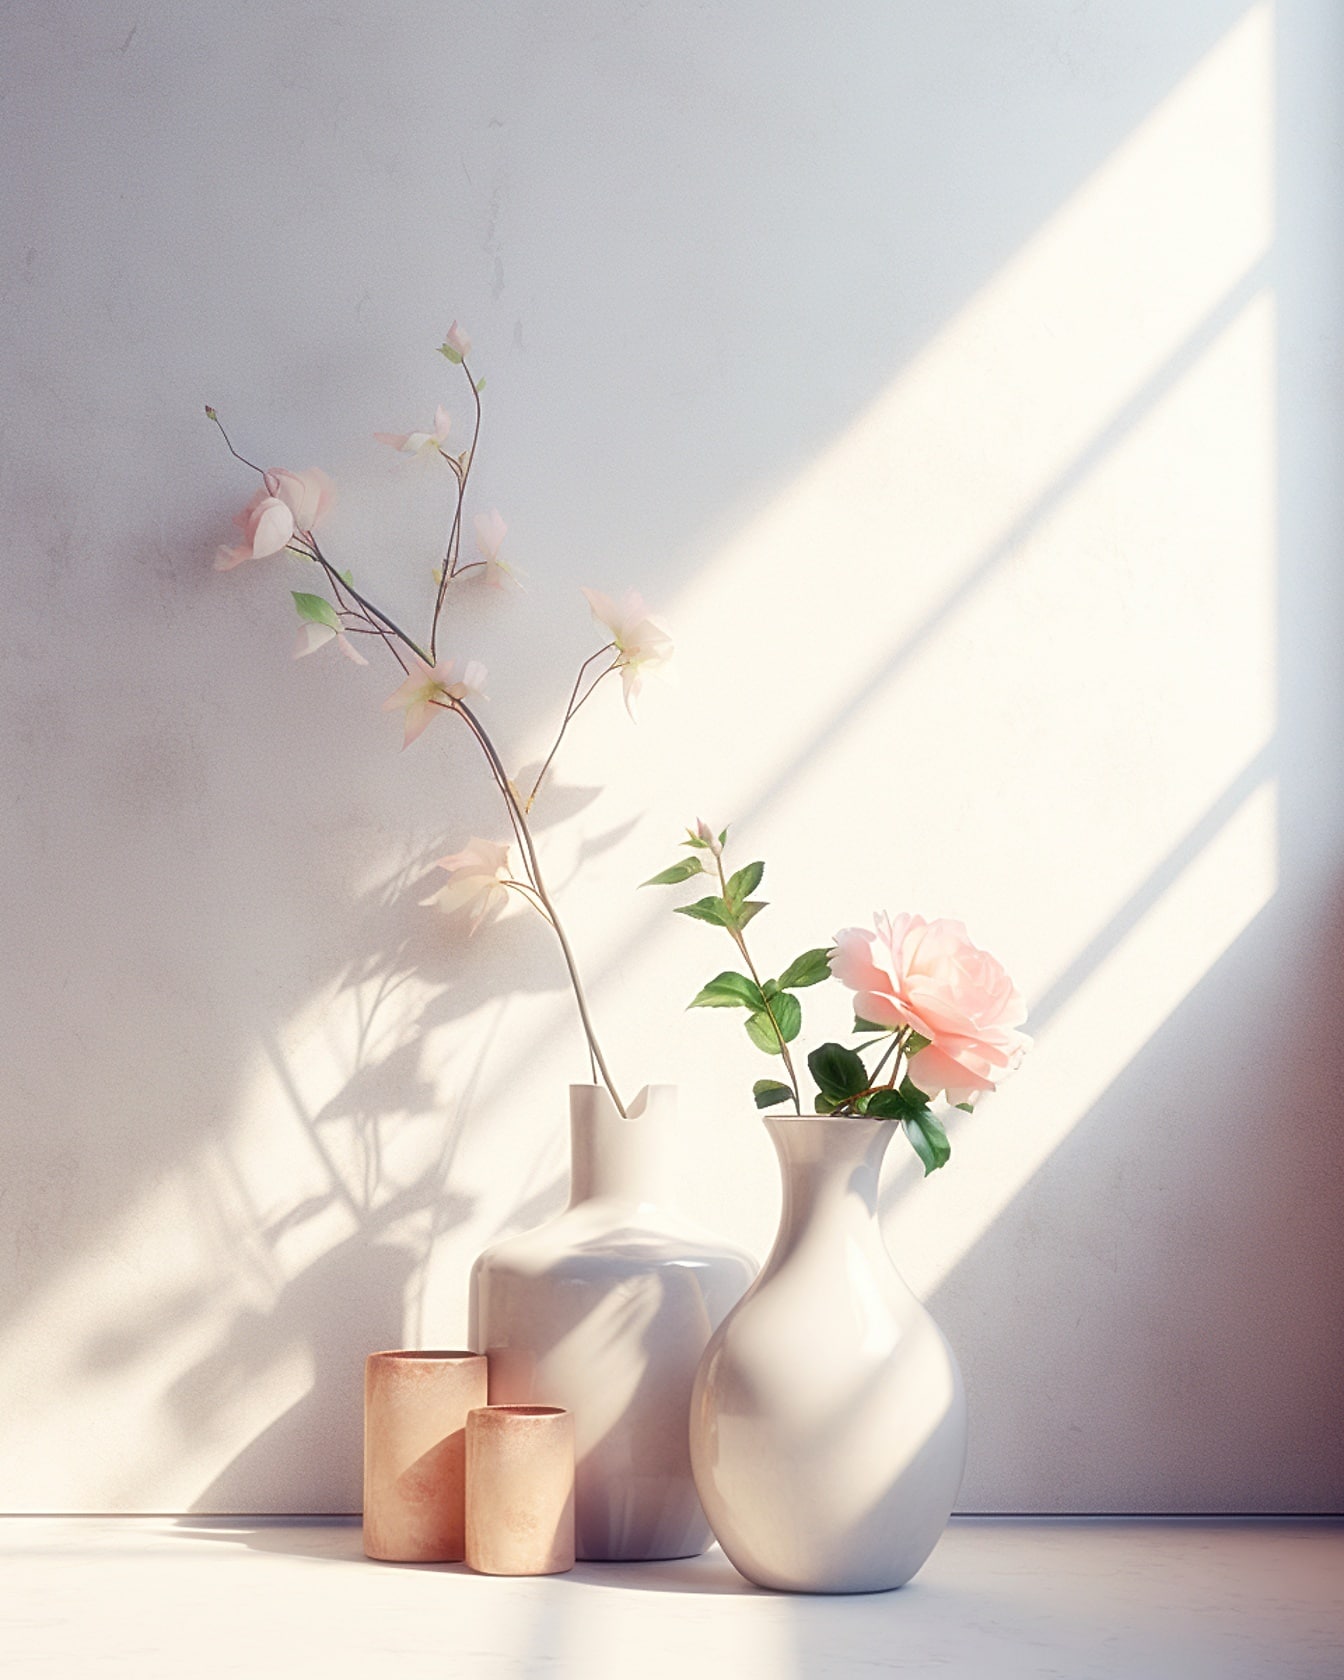 Kaksi posliinivalkoista maljakkoa, joissa on valkoisia ruusunkukkia, pöydällä pehmeässä valossa